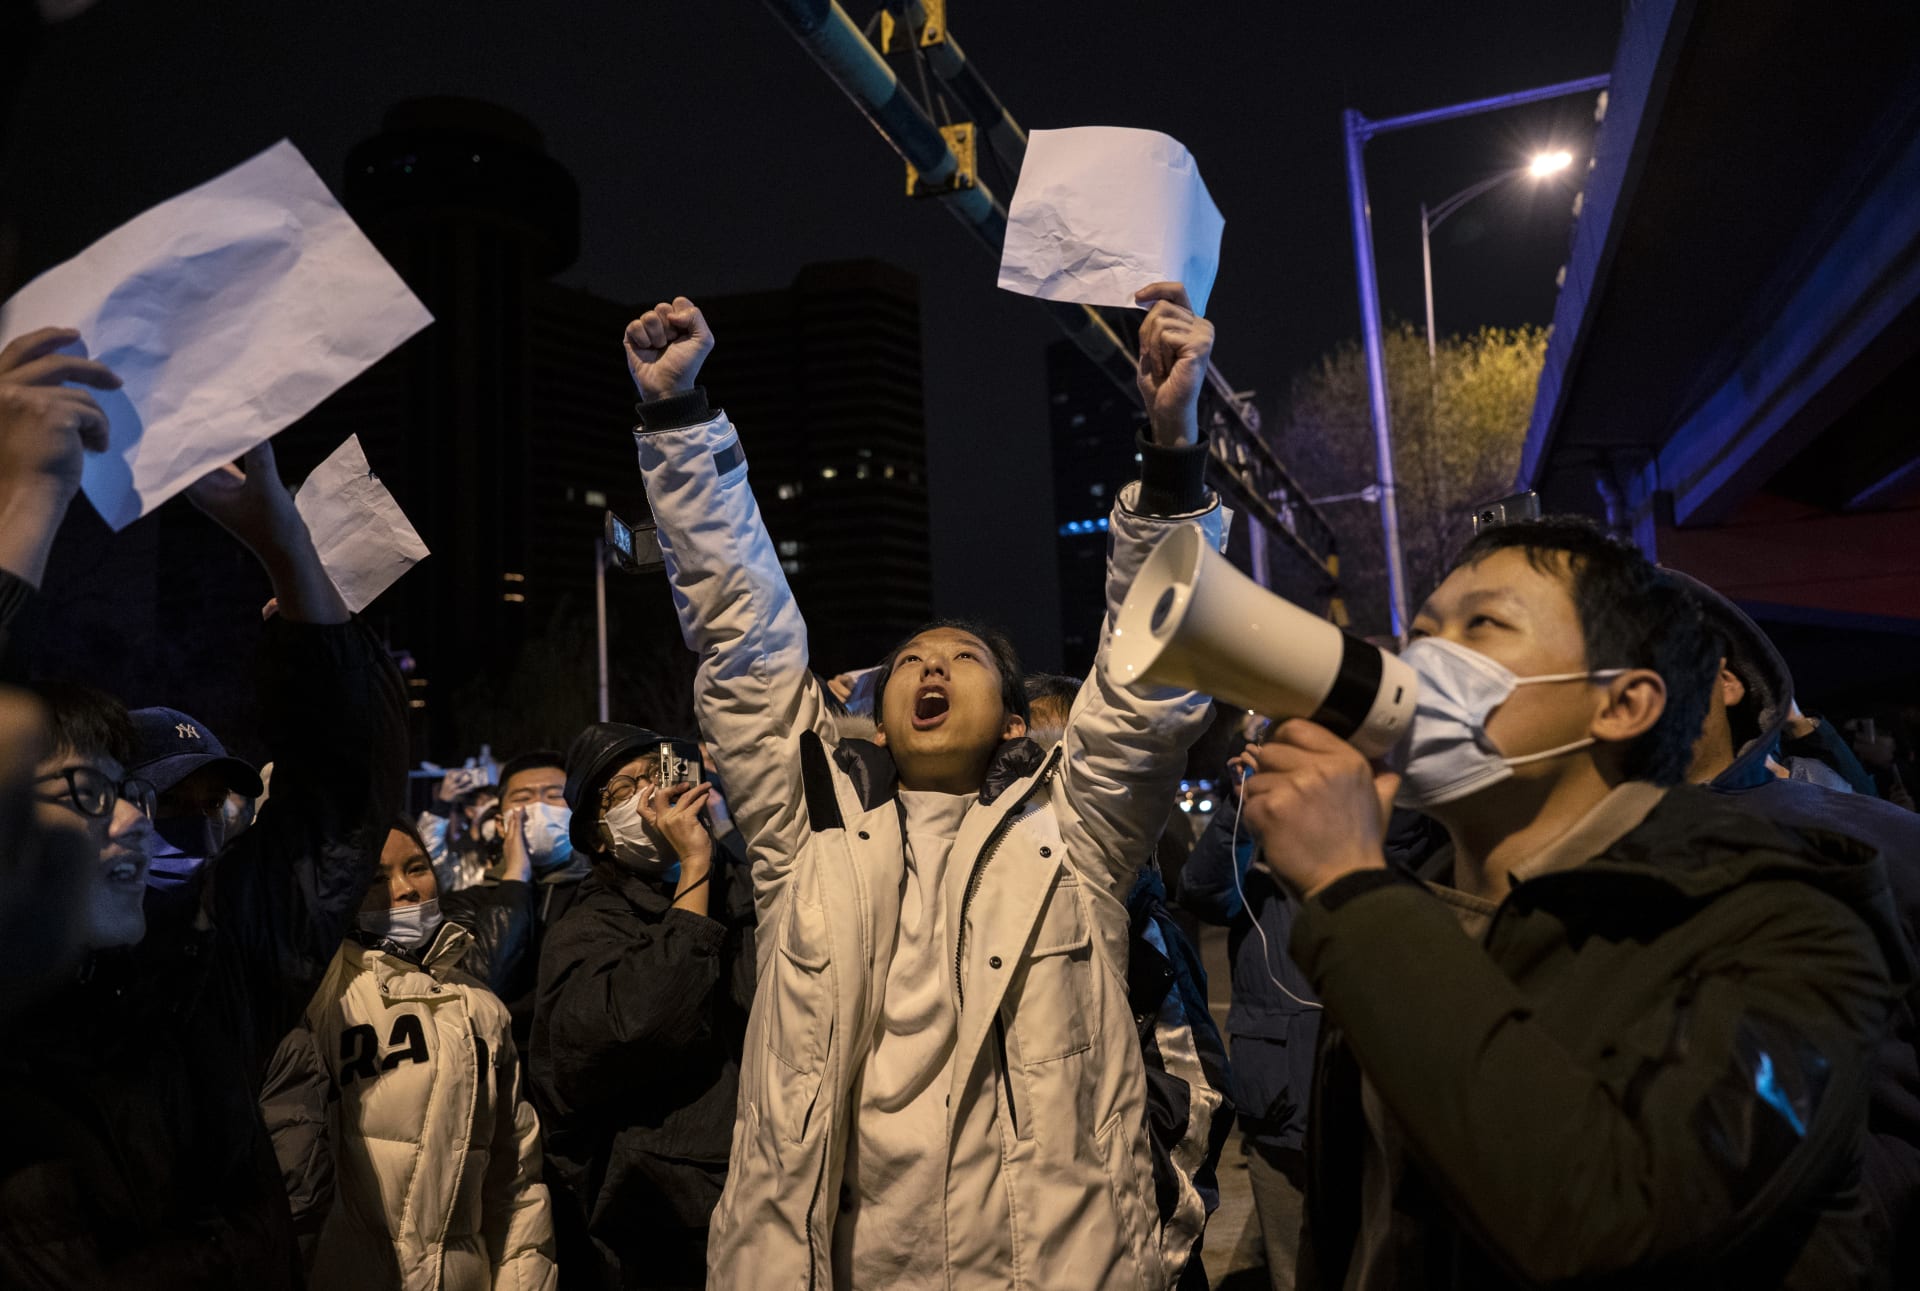 متظاهرون صينيون يطالبون بتنحي الرئيس شي جين بينغ في احتجاجات غير مسبوقة